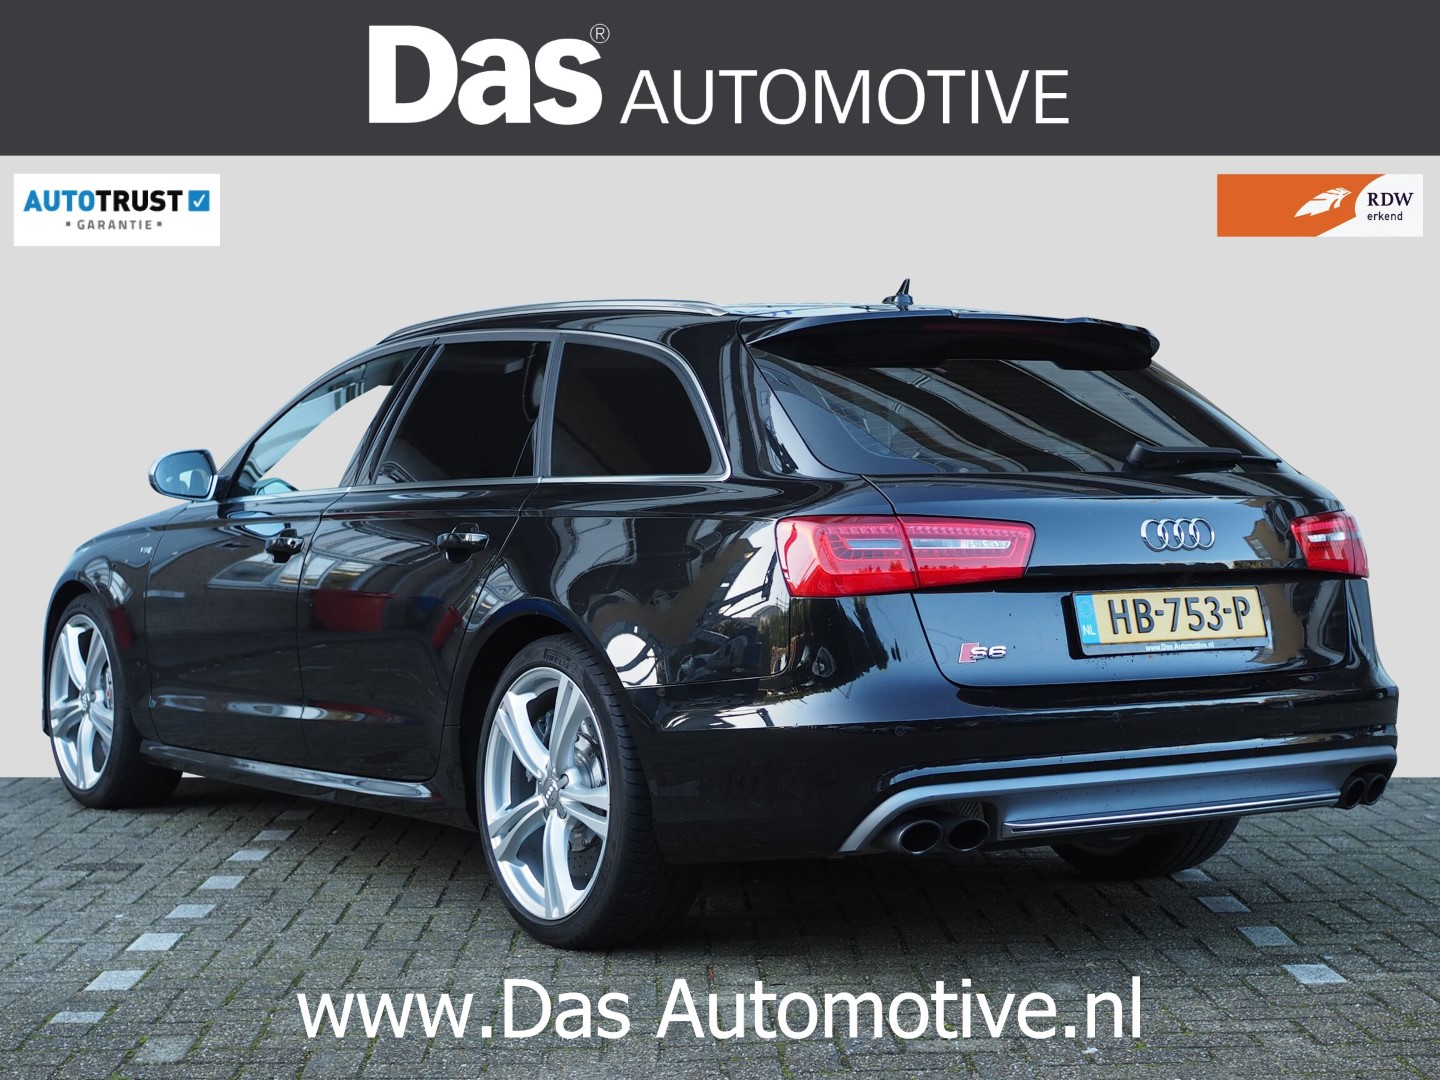 melk wit Bekwaamheid Helaas Te koop: uit Duitsland geimporteerde Audi S6 Avant (06/2013) - Das Import